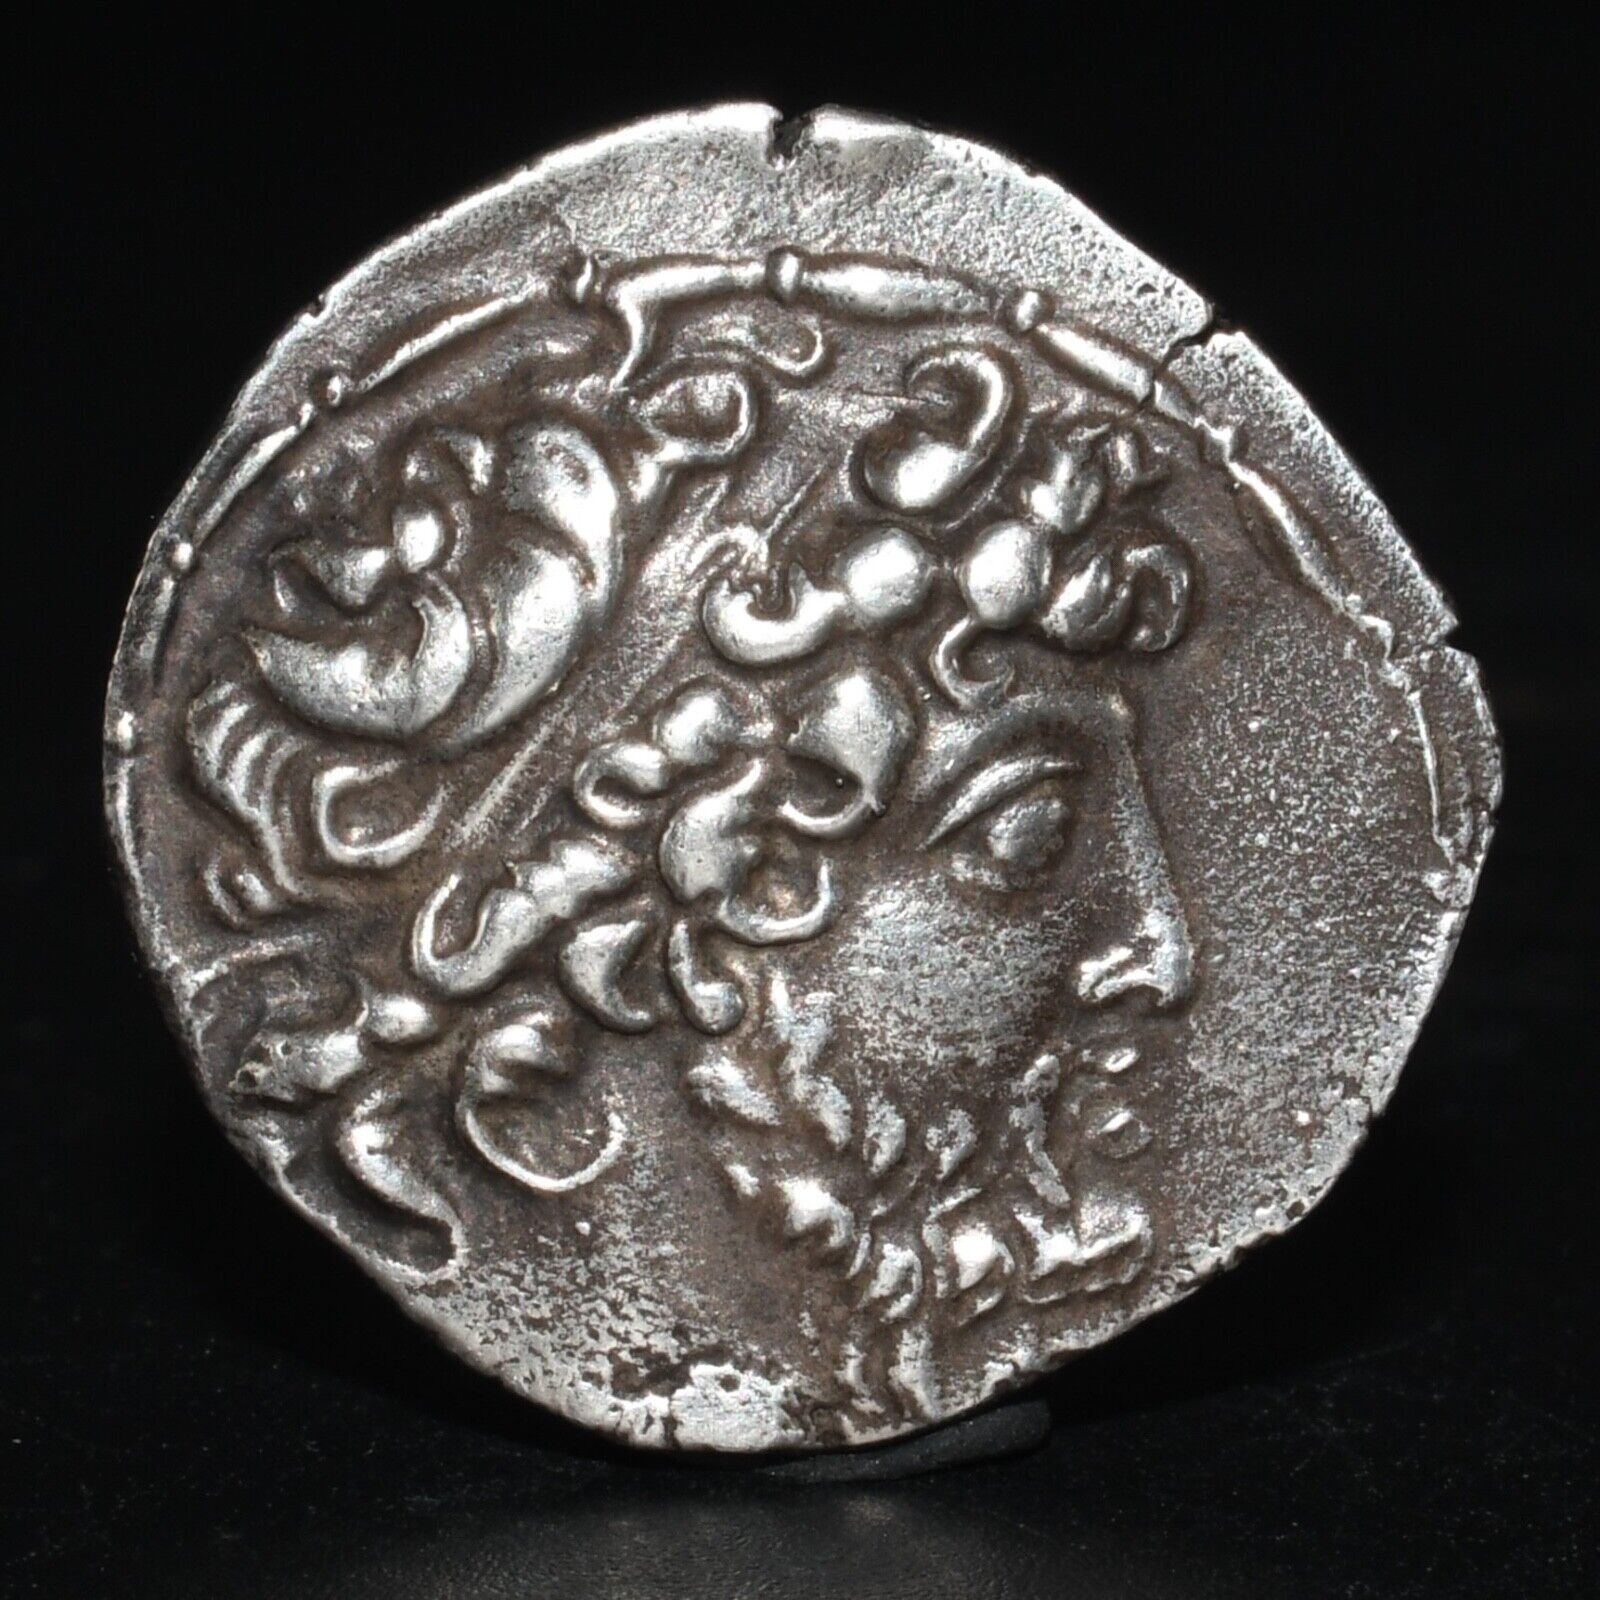 Ancient Seleucid Empire Silver Tetradrachm Coin of Demetrius II Circa 126-127 BC